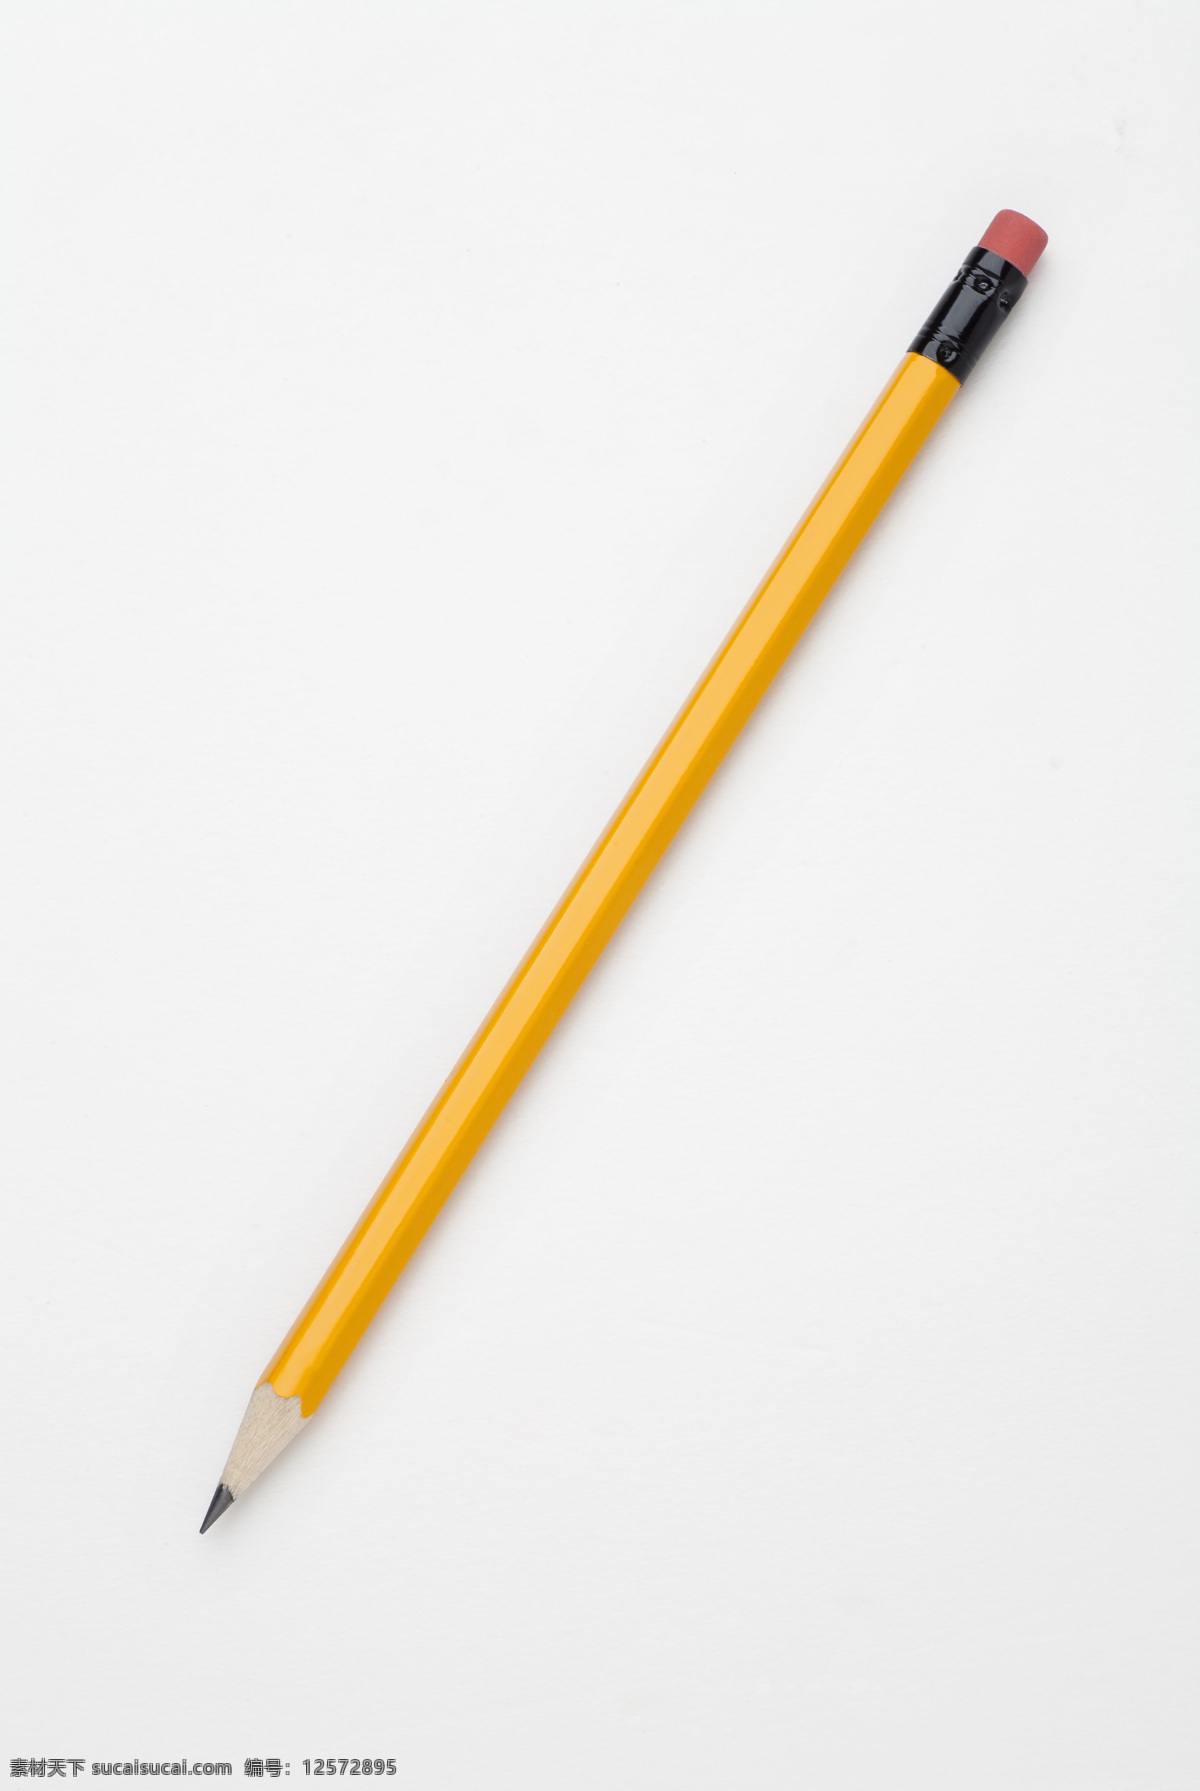 支 铅笔 笔 绘画笔 彩色铅笔 文具 学习用品 办公学习 生活百科